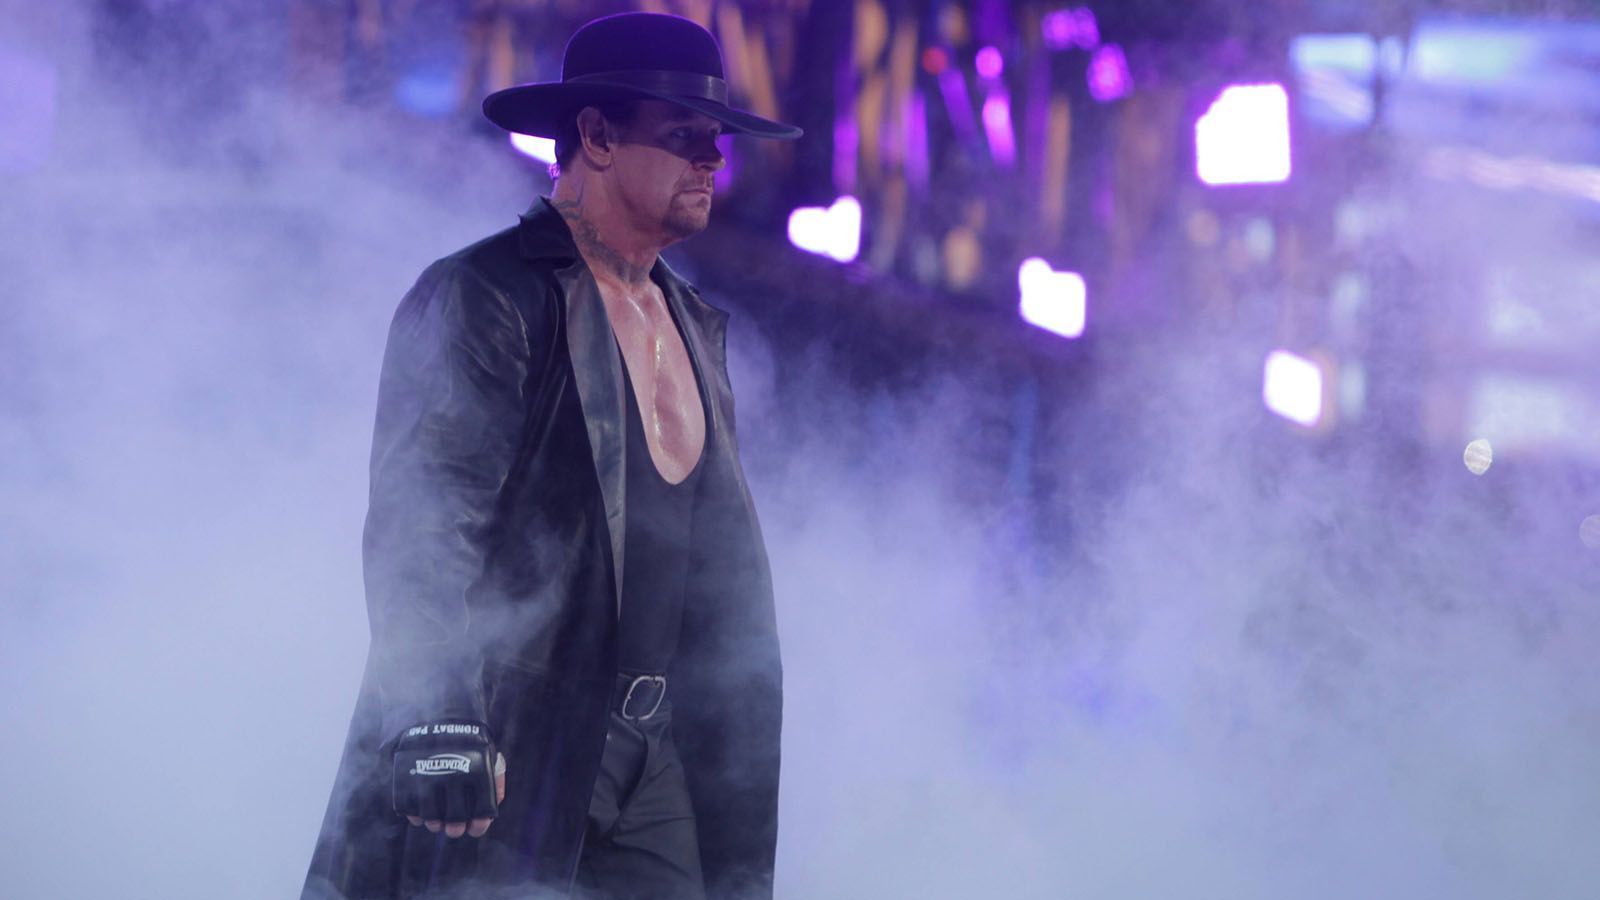 
                <strong>Hall of Fame</strong><br>
                Traditionell werden am WrestleMania-Wochenende auch neue Wrestler in die WWE-HoF aufgenommen. Dieses Jahr wird die Klasse vom "Undertaker" angeführt, er ist einer der wohl bekanntesten Wrestler der Geschichte! Mark Callaway, so der bürgerliche Name des "Takers", debütierte 1990 in der WWE und beendete 2020 seine Karriere. In seiner Vita stehen über 13 WWE-Titel. Unvergessen: Seine Siegesserie bei WrestleMania. Von 1991 bis 2014 verlor der Undertaker nicht ein Match auf der "Grandest Stage of them all". Von 27 Matches bei WrestleMania konnte der "Deadman" 25 für sich entscheiden. Neben ihm werden der 2018 verstorbene Vader, Queen Sharmell und die Steiner Brothers in die Ruhmeshalle eingeführt.
              